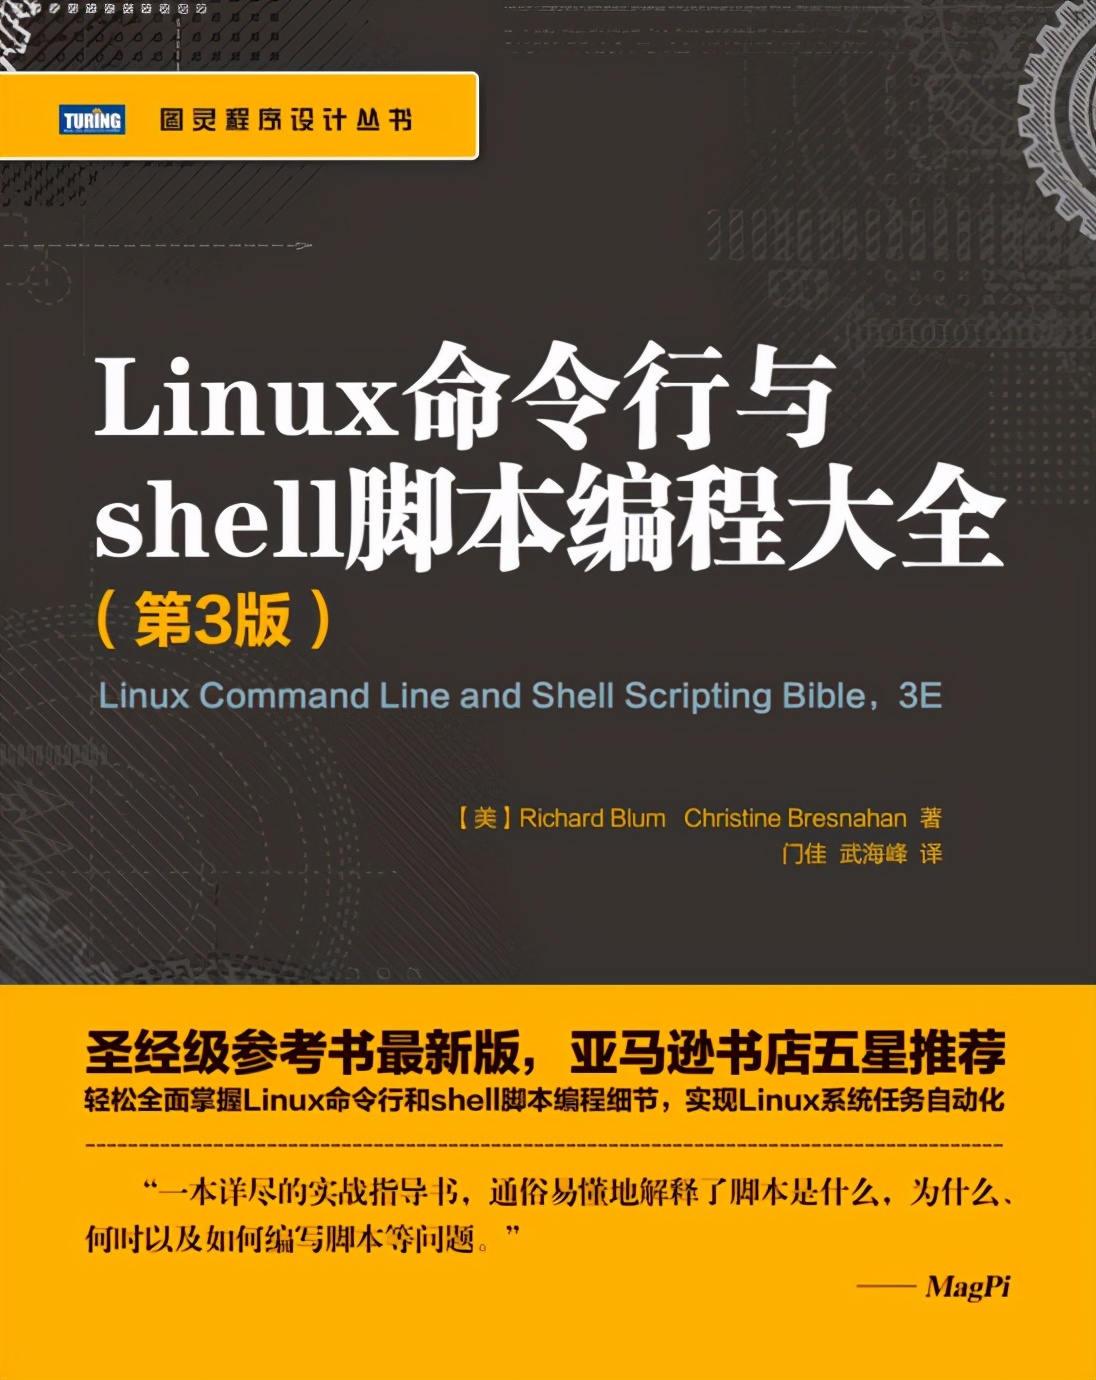 阿里巴巴《Linux命令行与shell脚本编程大全》高清版 PDF 开放下载